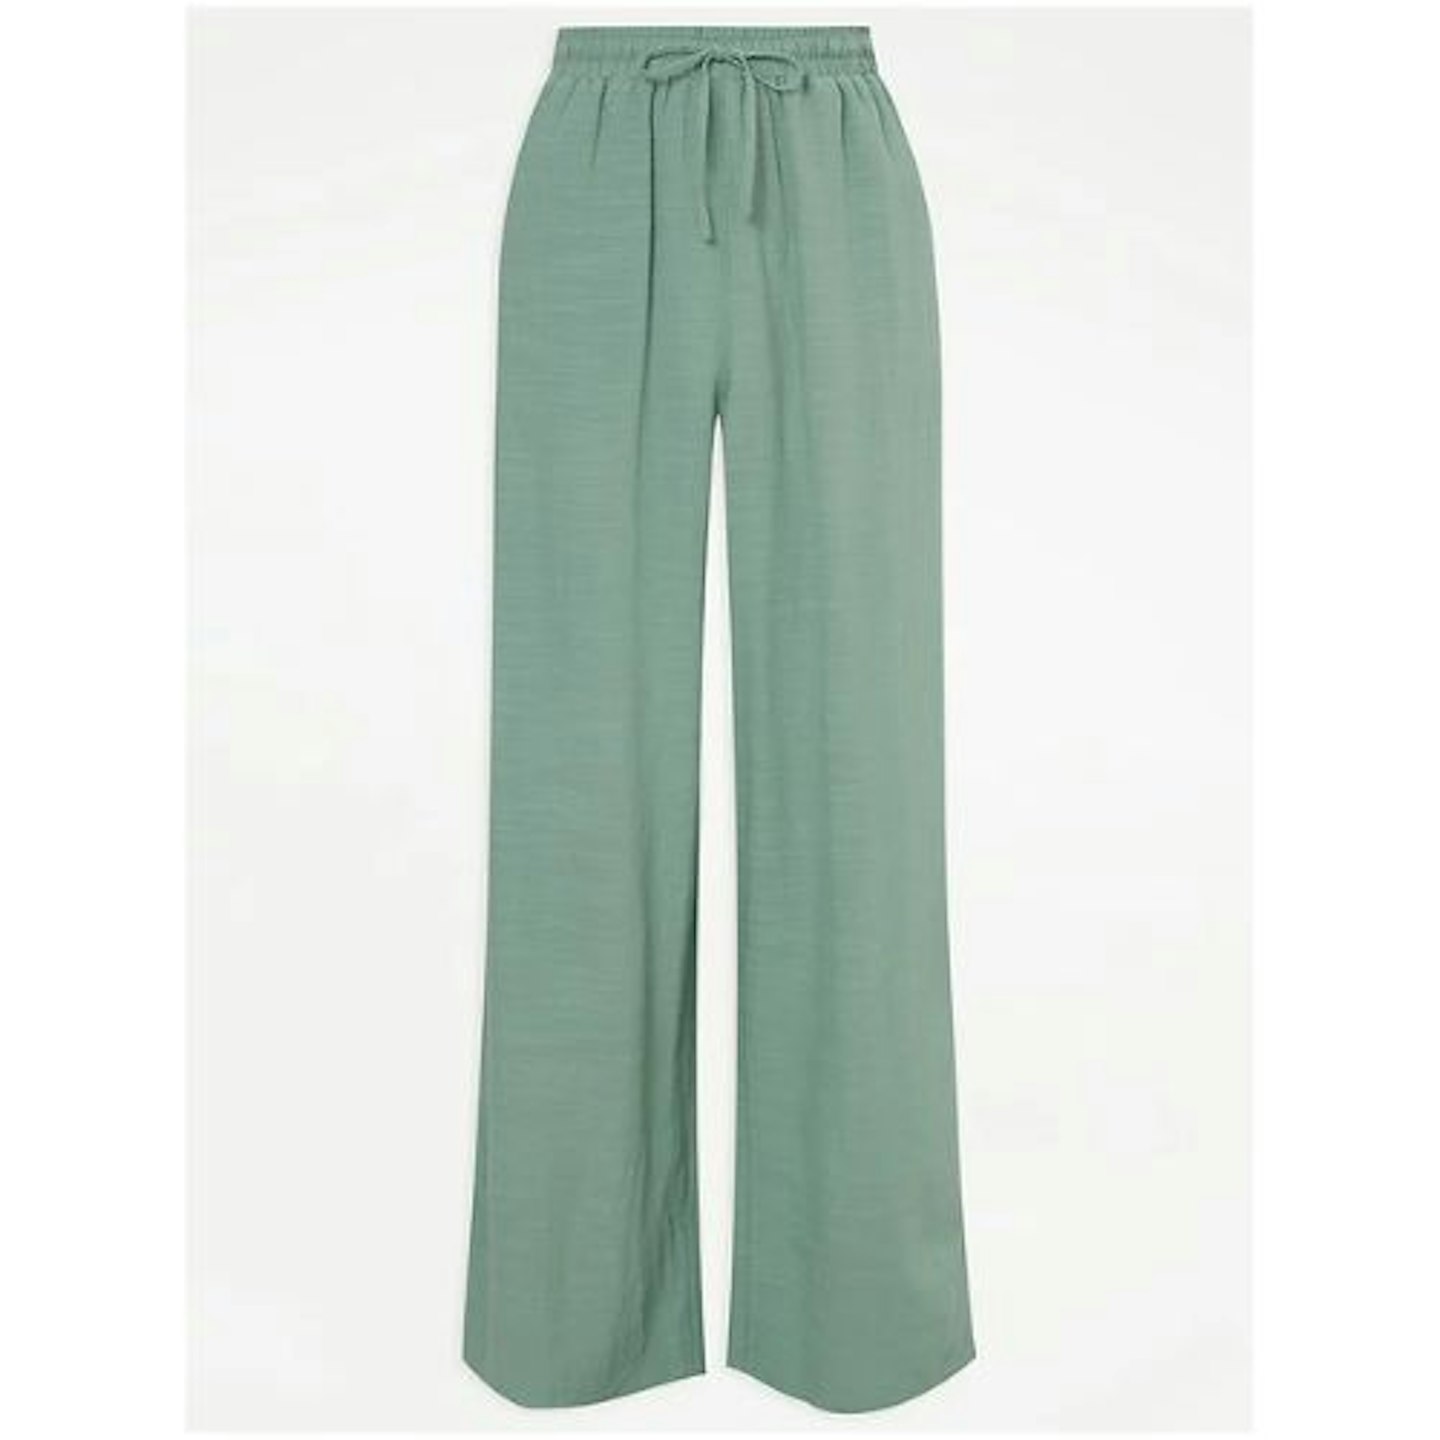 Billie Faiers ASDA Green Linen Look Trousers